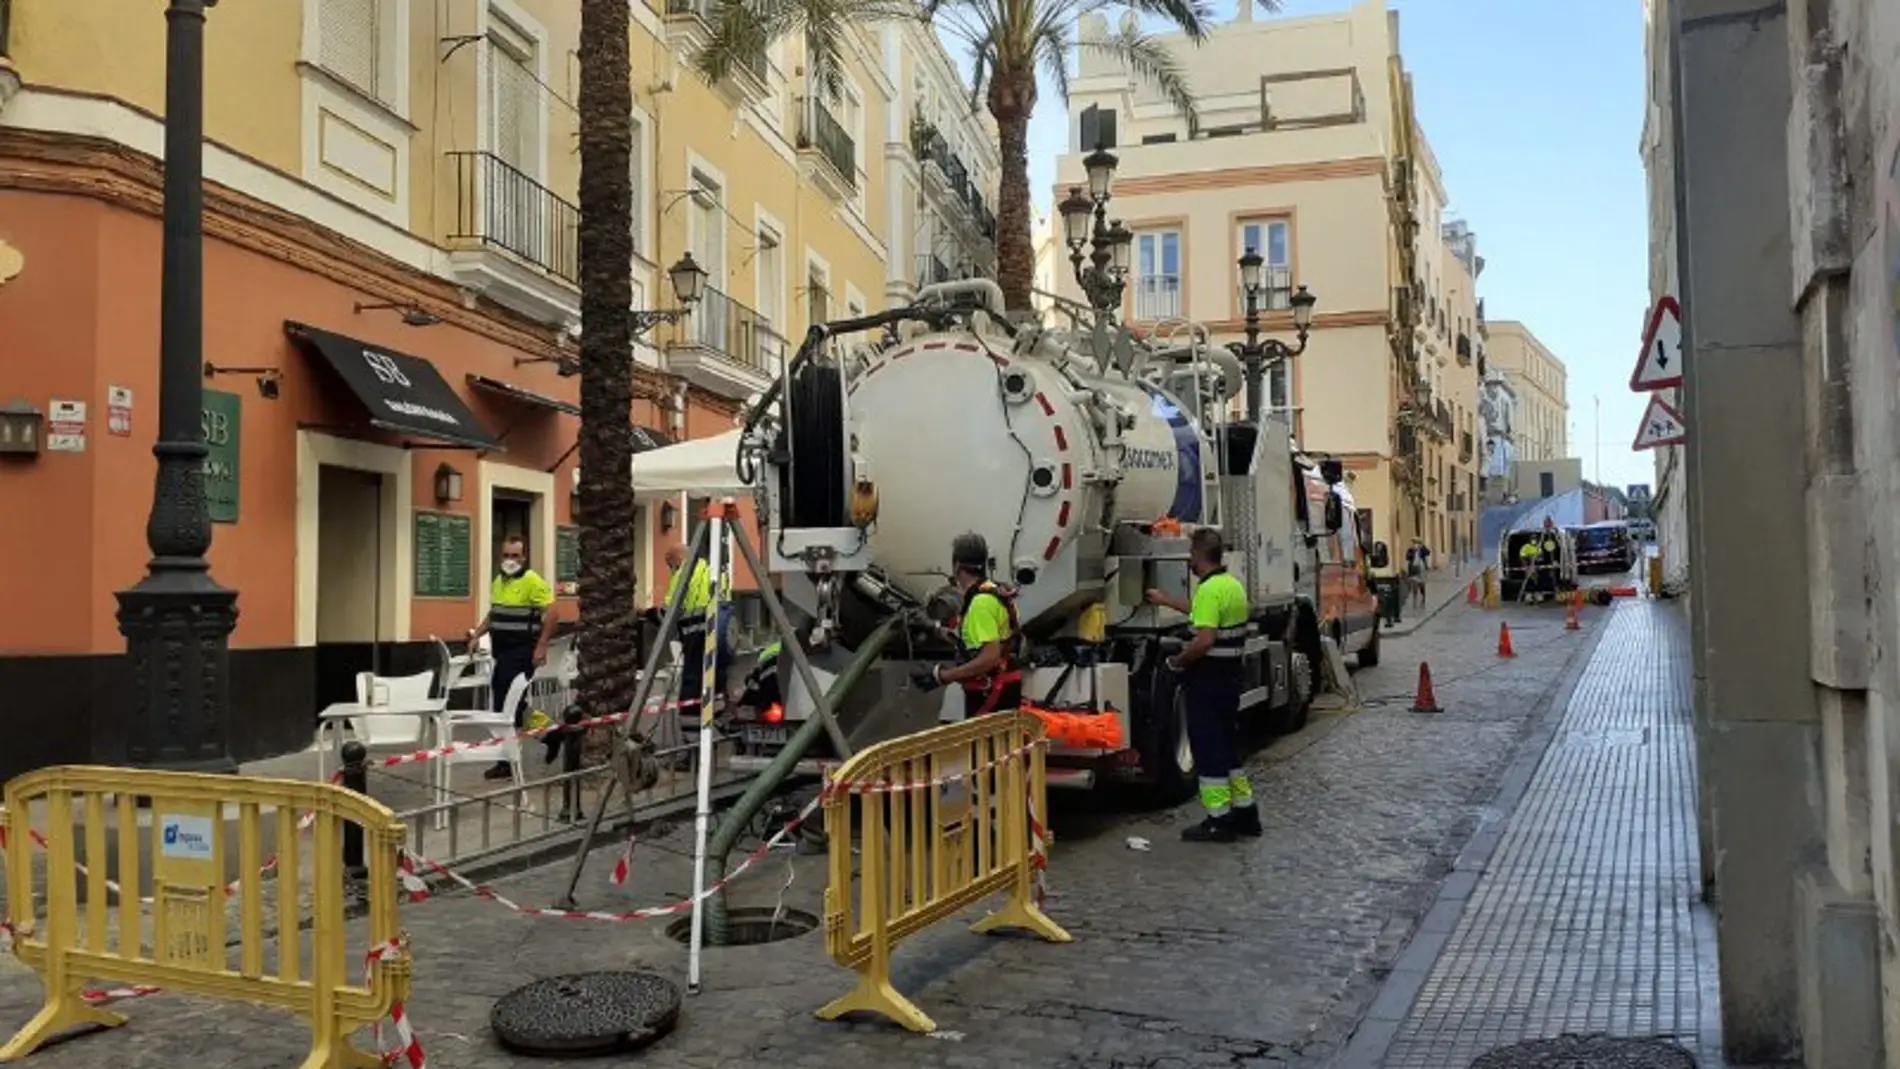 Instantes de la limpieza en una de las calles del centro de Cádiz